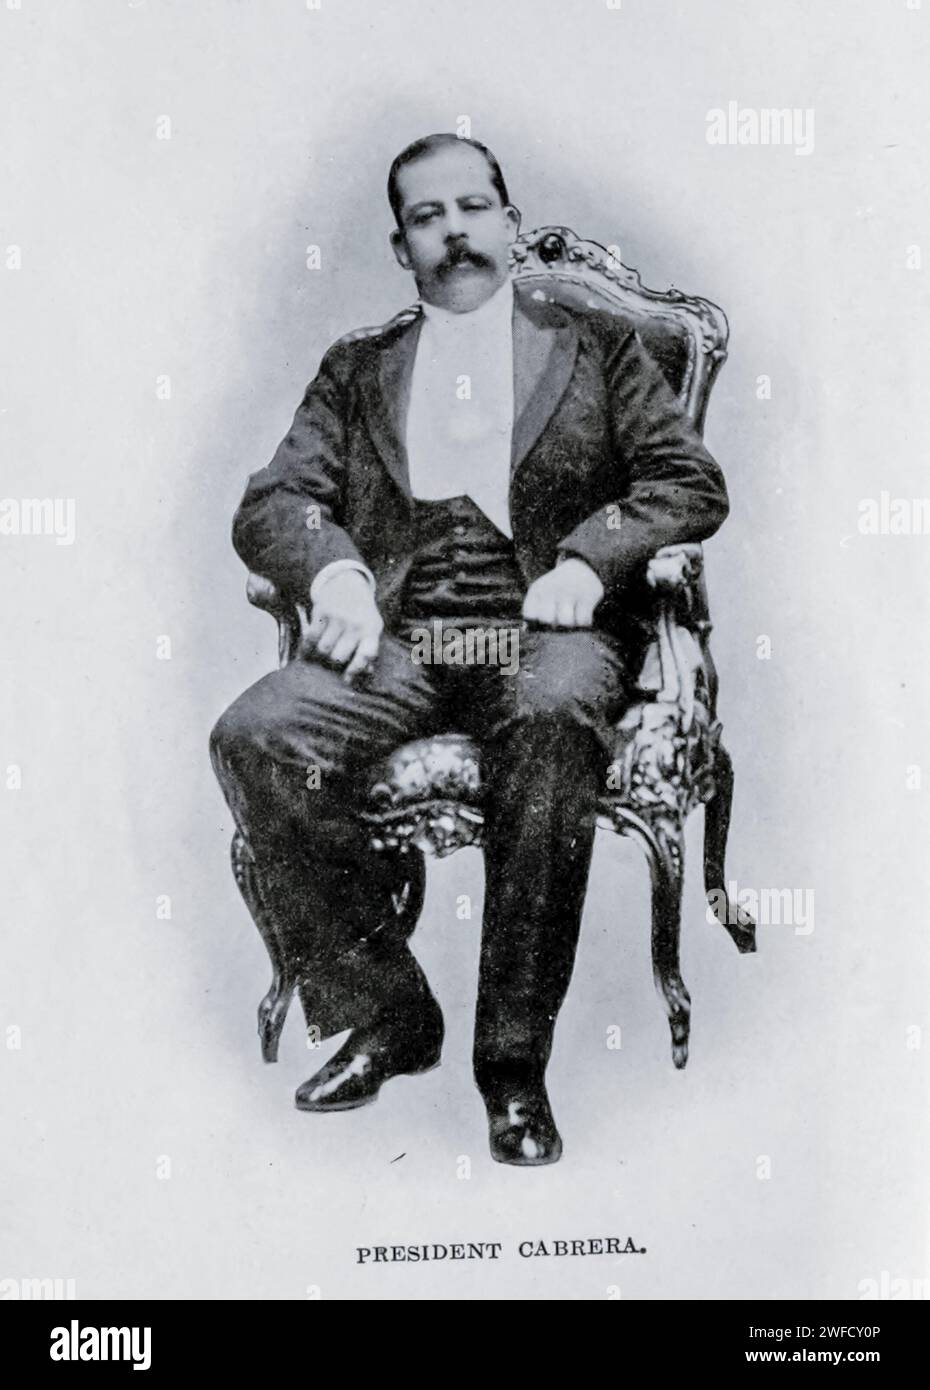 Manuel José Estrada Cabrera (21 novembre 1857 – 24 septembre 1924) est le président du Guatemala de 1898 à 1920. Avocat sans expérience militaire, il était un dictateur qui modernisait l'industrie et les infrastructures de transport du pays, mais seulement en accordant des concessions à la United fruit Company, propriété américaine, dont l'influence sur le gouvernement était profondément impopulaire parmi la population. Estrada Cabrera a utilisé des méthodes de plus en plus brutales pour affirmer son autorité, notamment en brisant les grèves armées, et il a effectivement contrôlé les élections générales. Il a conservé le pouvoir pendant 22 ans Banque D'Images